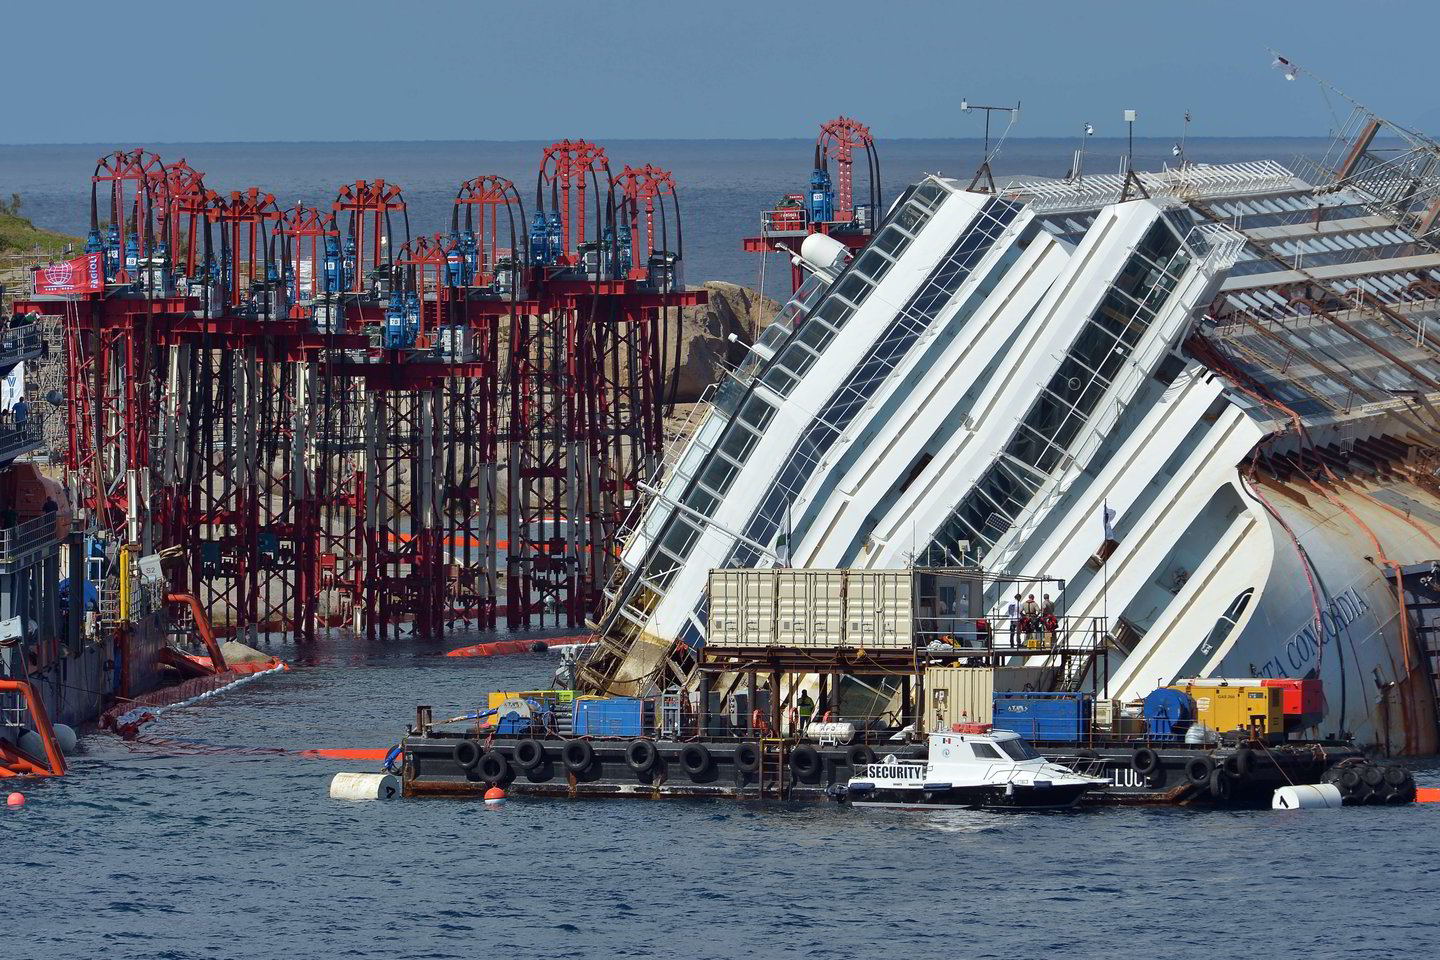  2013 m. avariją patyrė italų kruizinis laivas Costa Concordia. Įvykis nusinešė 32 gyvybes.<br> AFP / Scanpix nuotr.